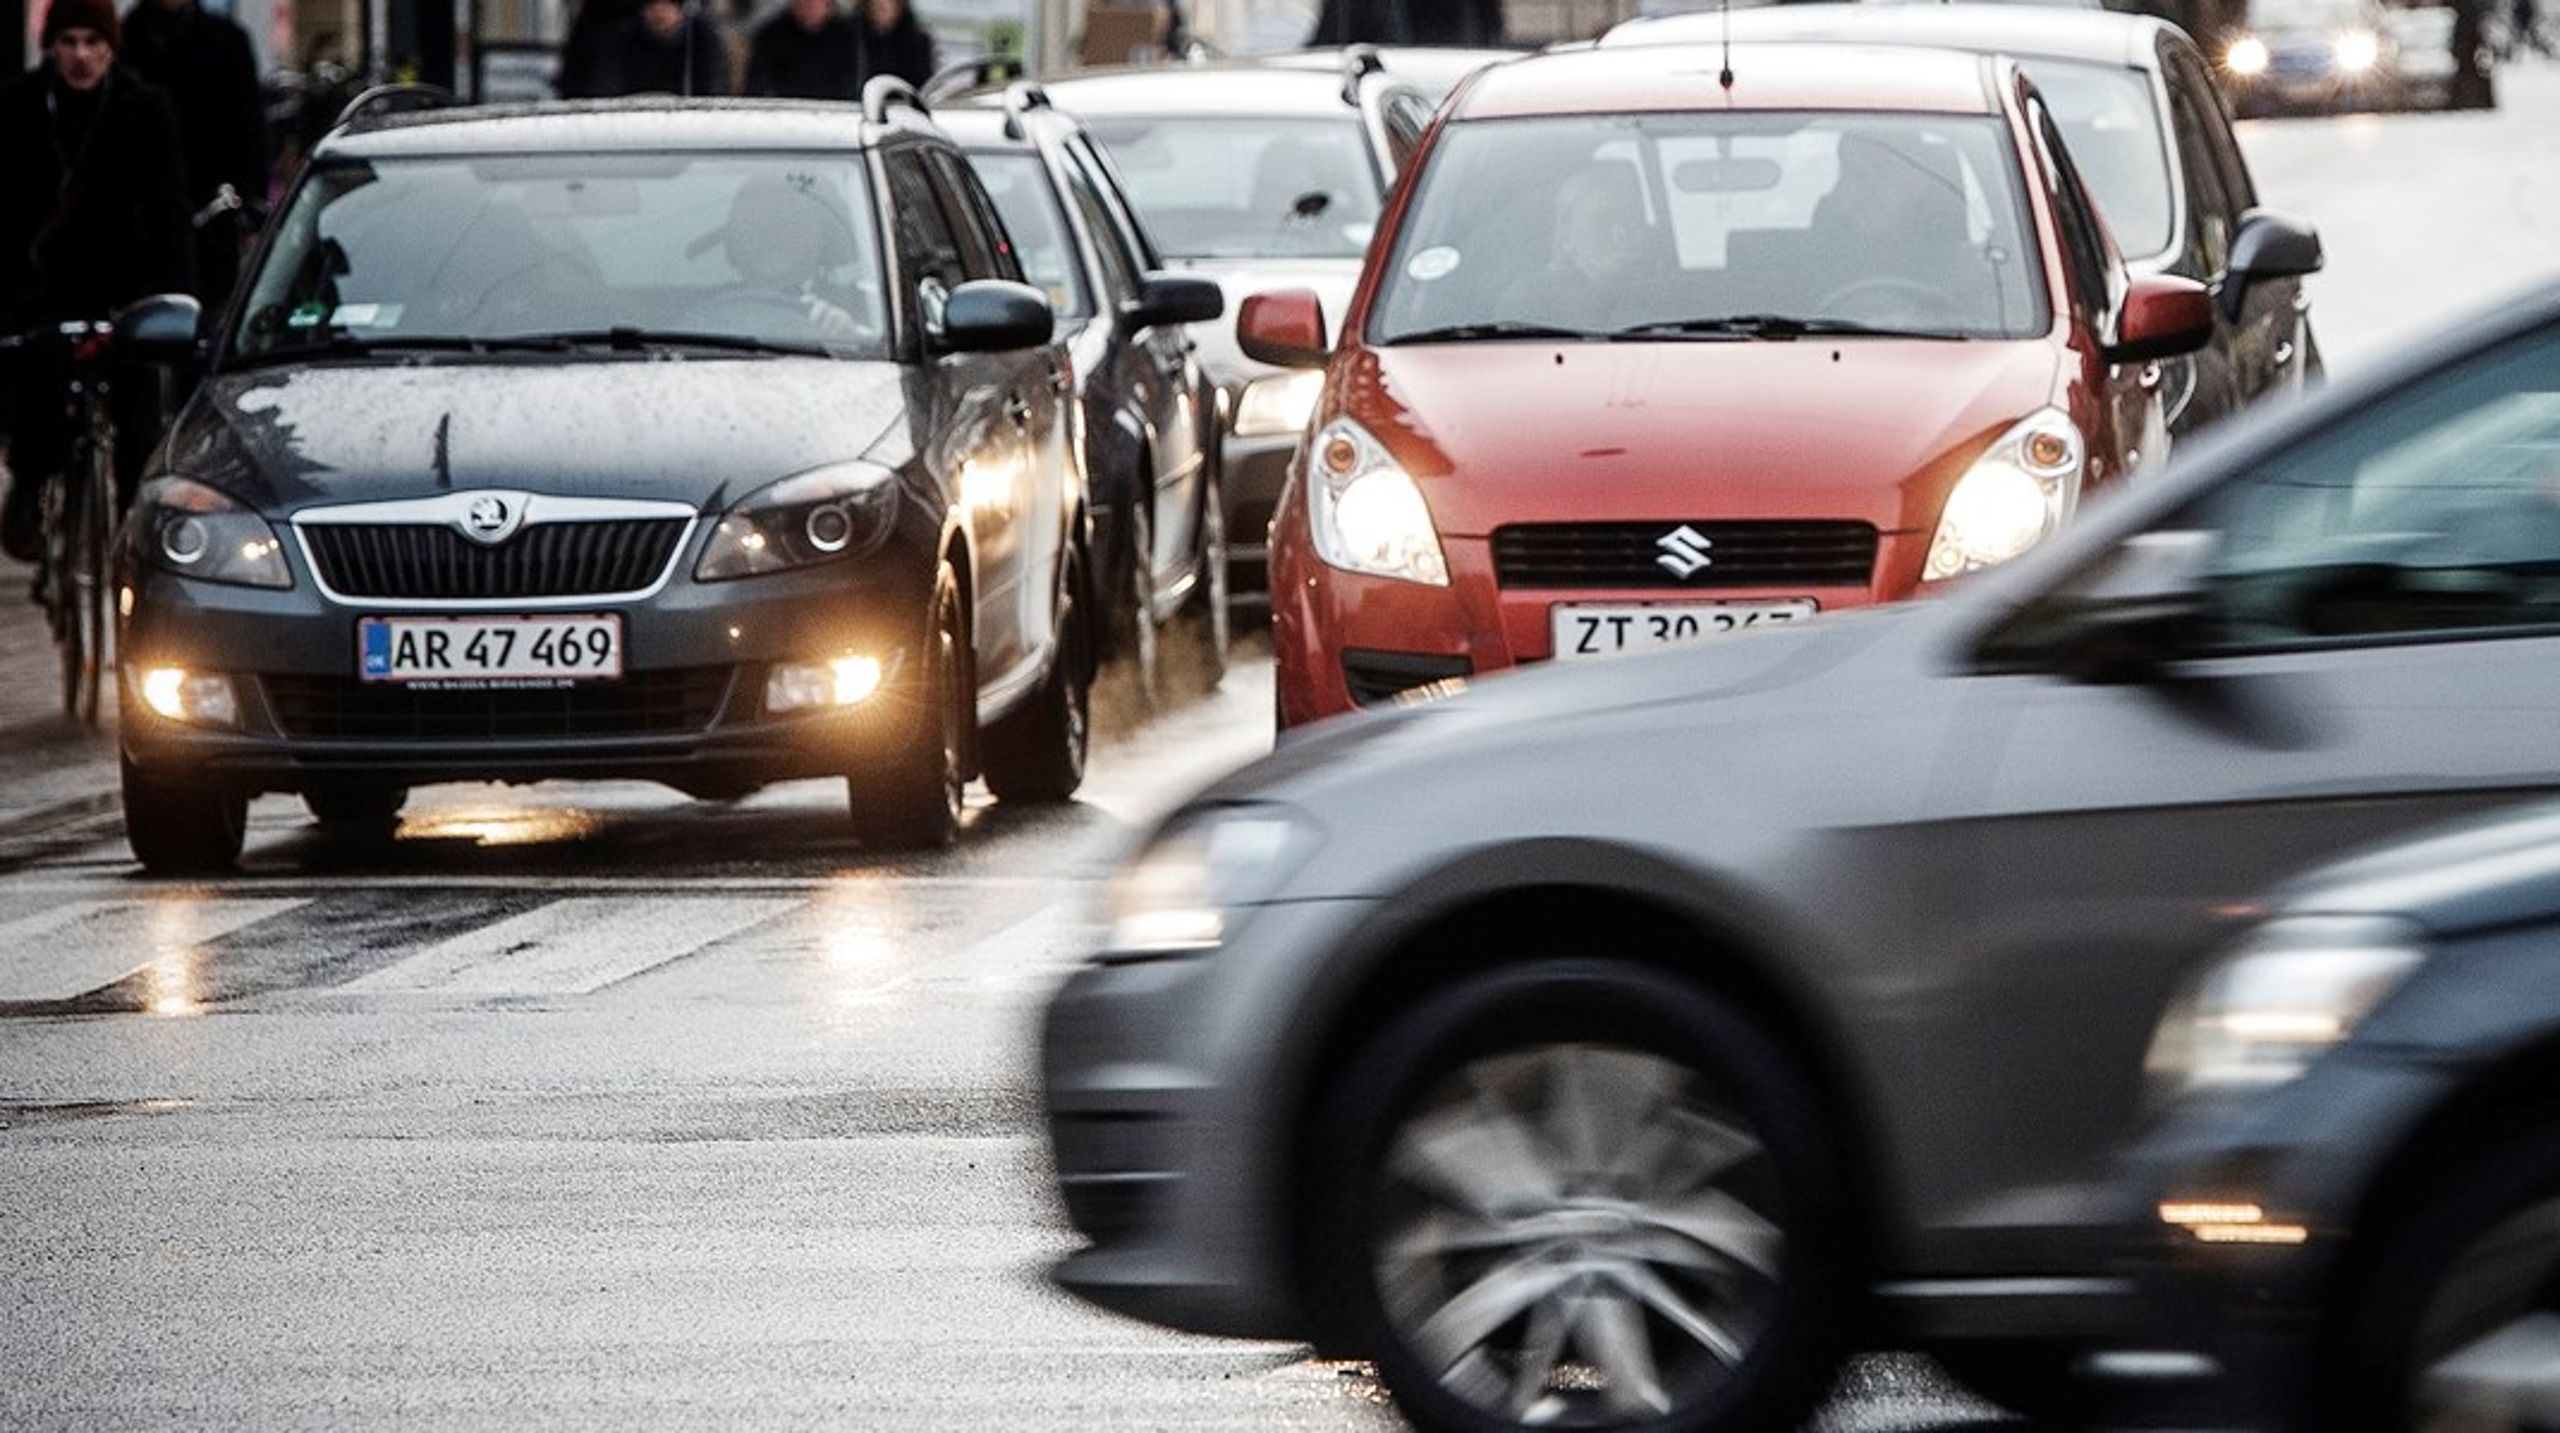 Indtil et landsdækkende roadpricingsystem bliver lanceret, er der behov for en trængselsafgift i de større byer, mener Rådet for Grøn Omstilling.